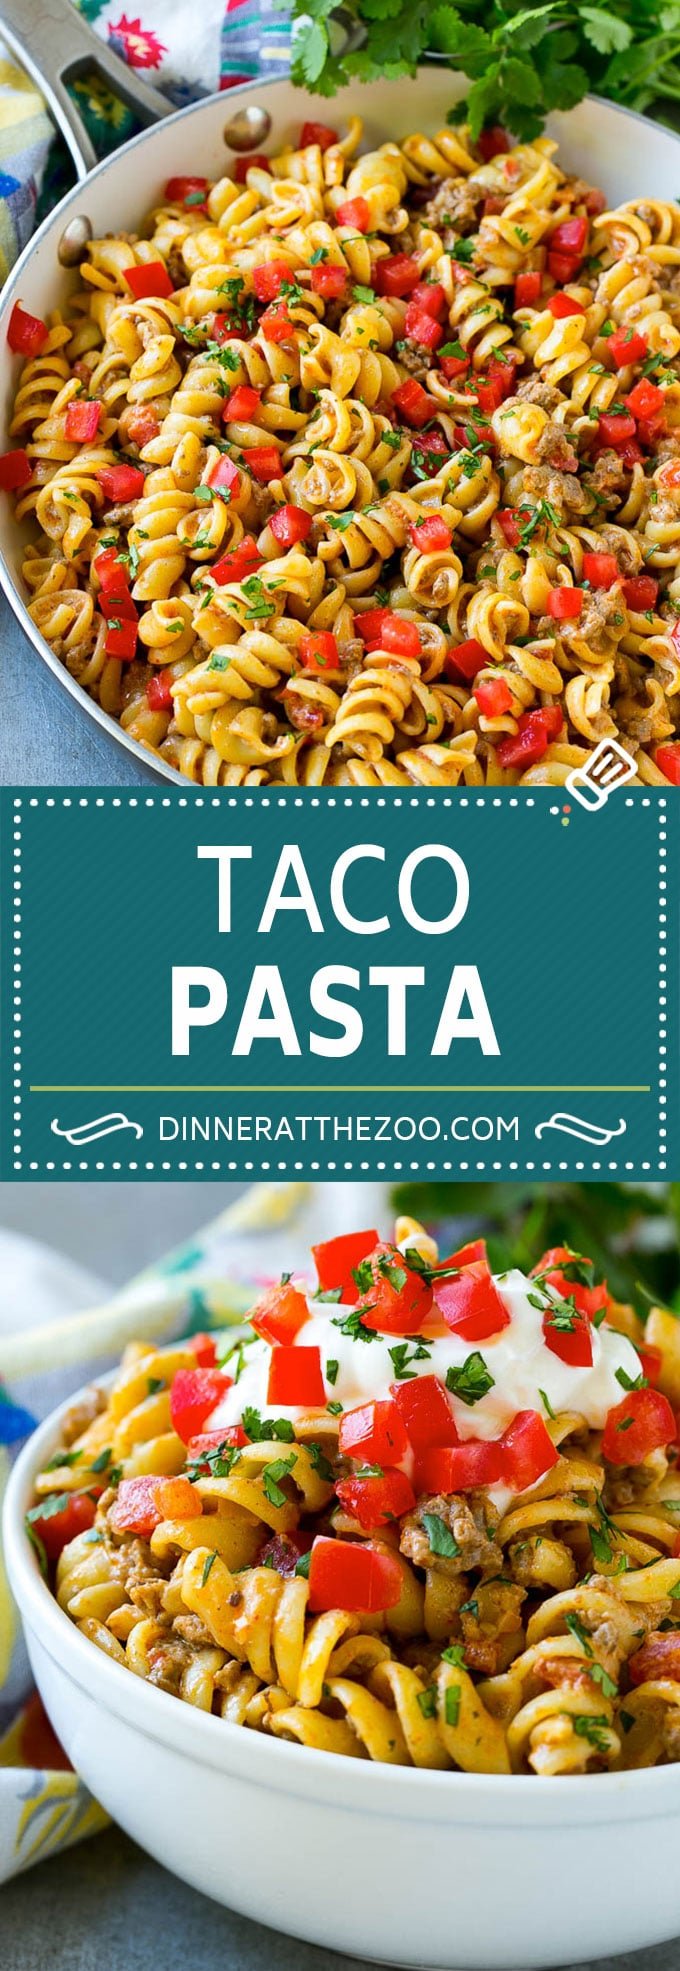 Taco Pasta Recipe | Cheesy Pasta | Mexican Pasta #taco #pasta #dinneratthezoo